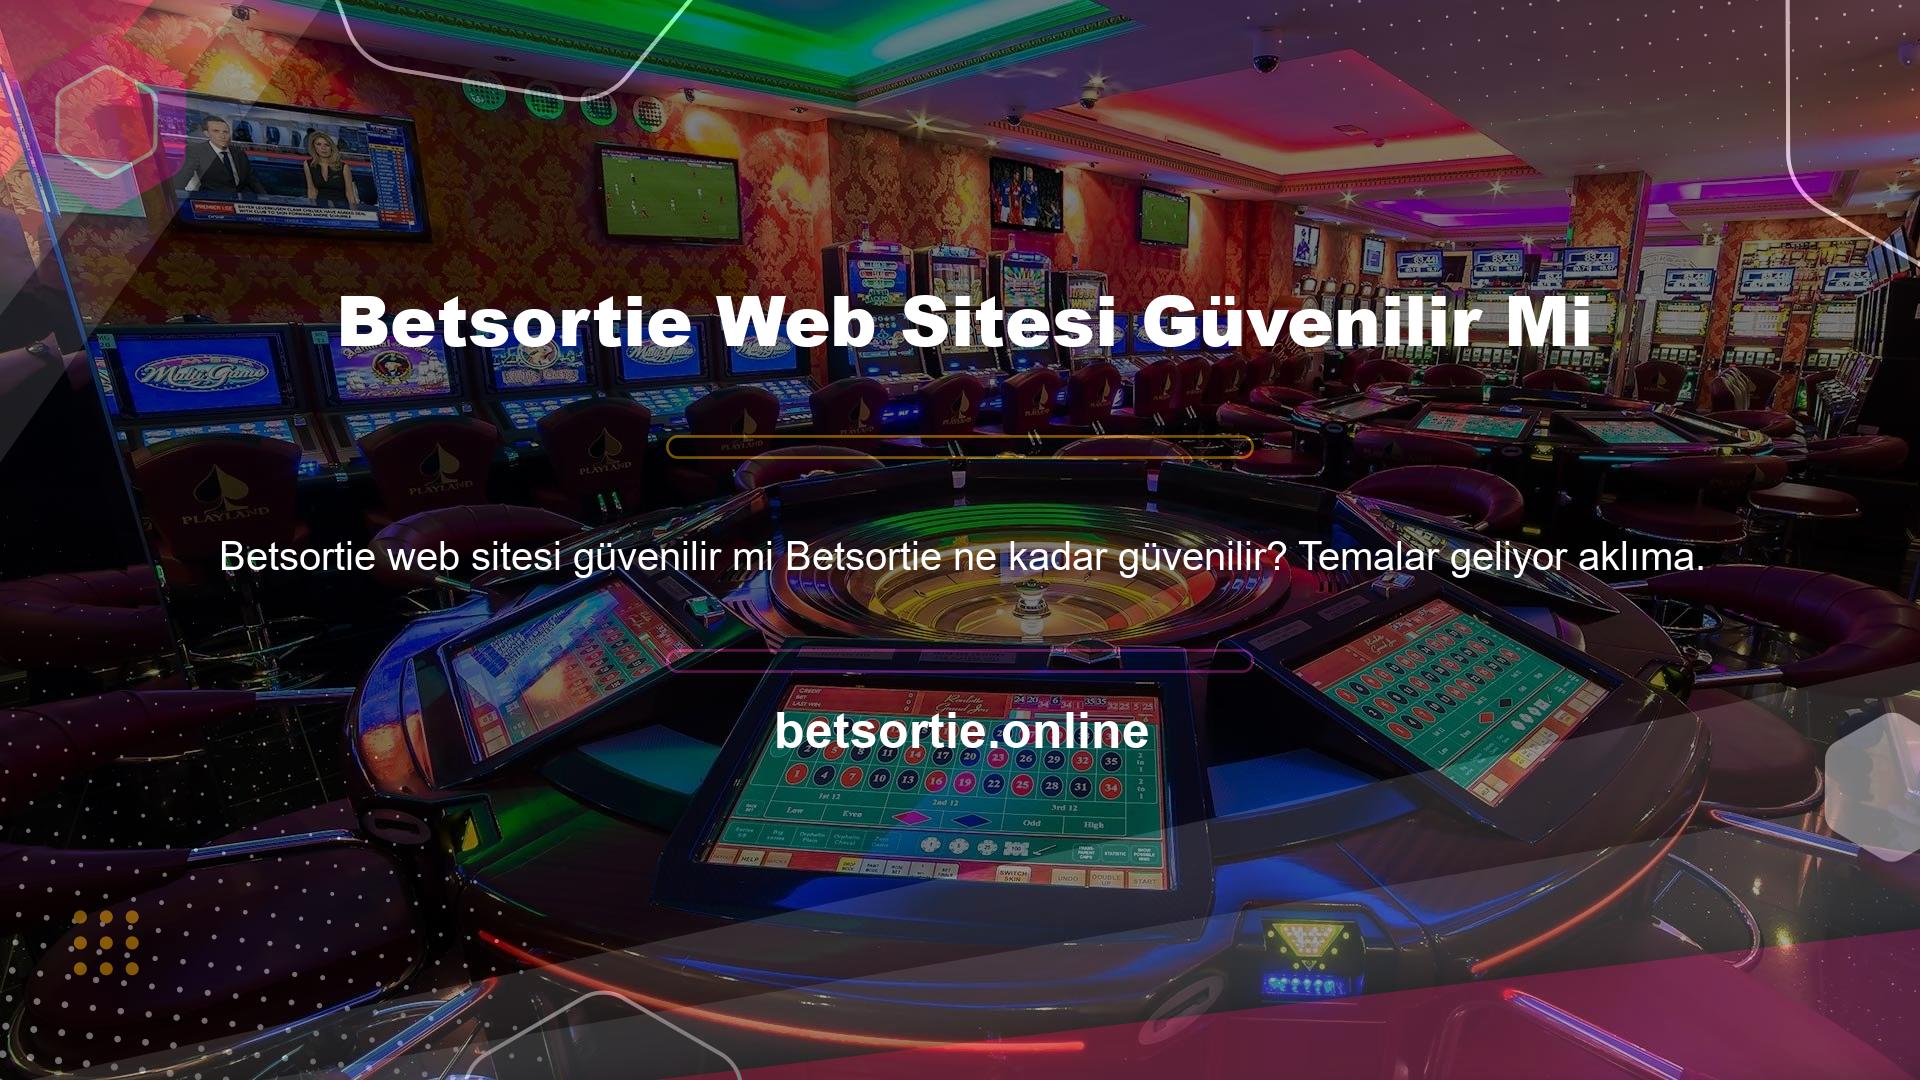 Betsortie, güvenli bir bahis ve yatırım web sitesinin tüm yönlerine değiniyor